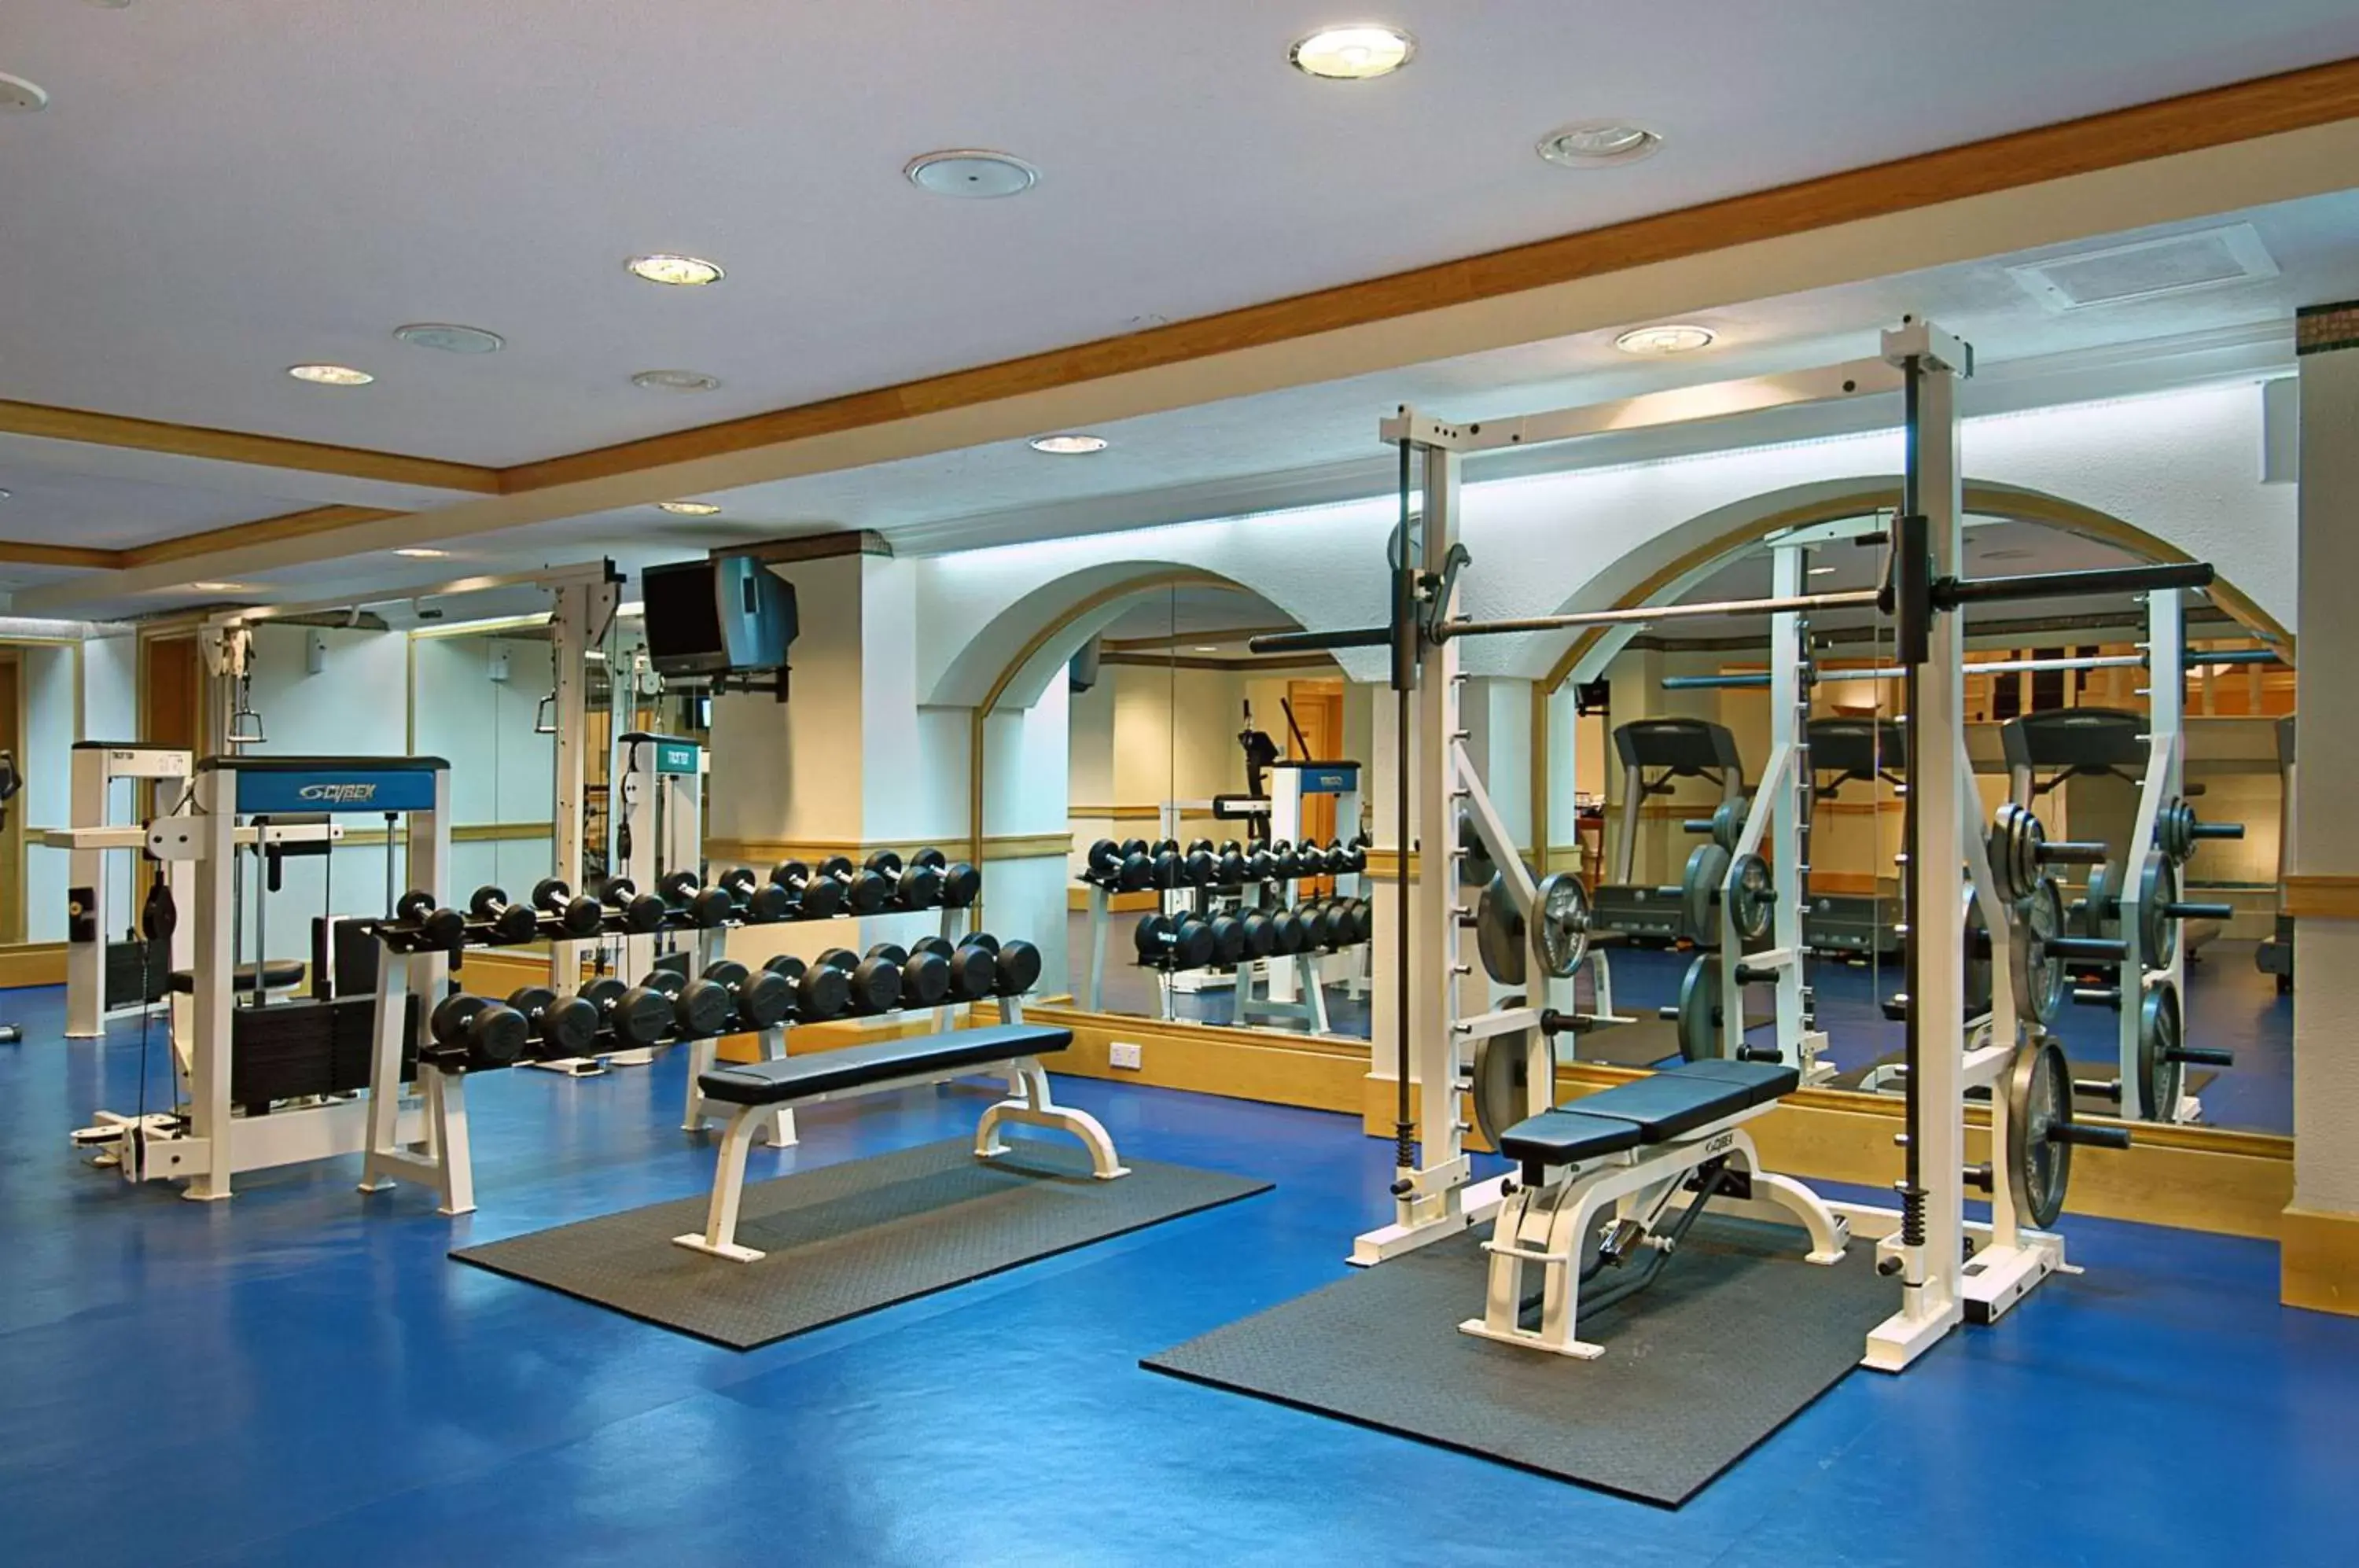 Fitness centre/facilities, Fitness Center/Facilities in Grand Hyatt Muscat